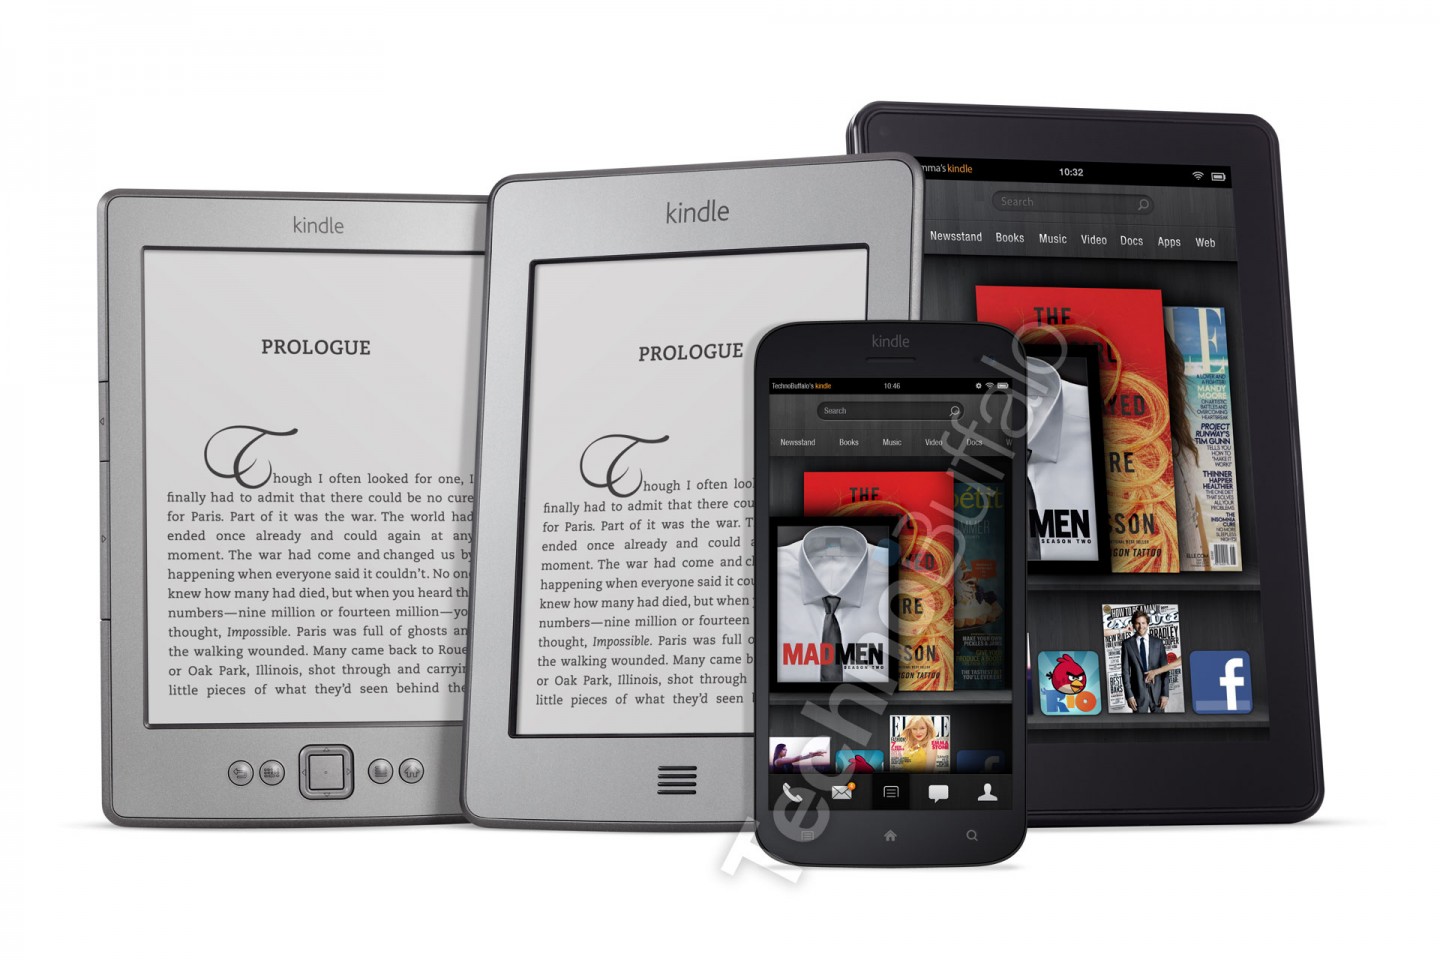 ... Amazon Kindle; Amazon Kindle